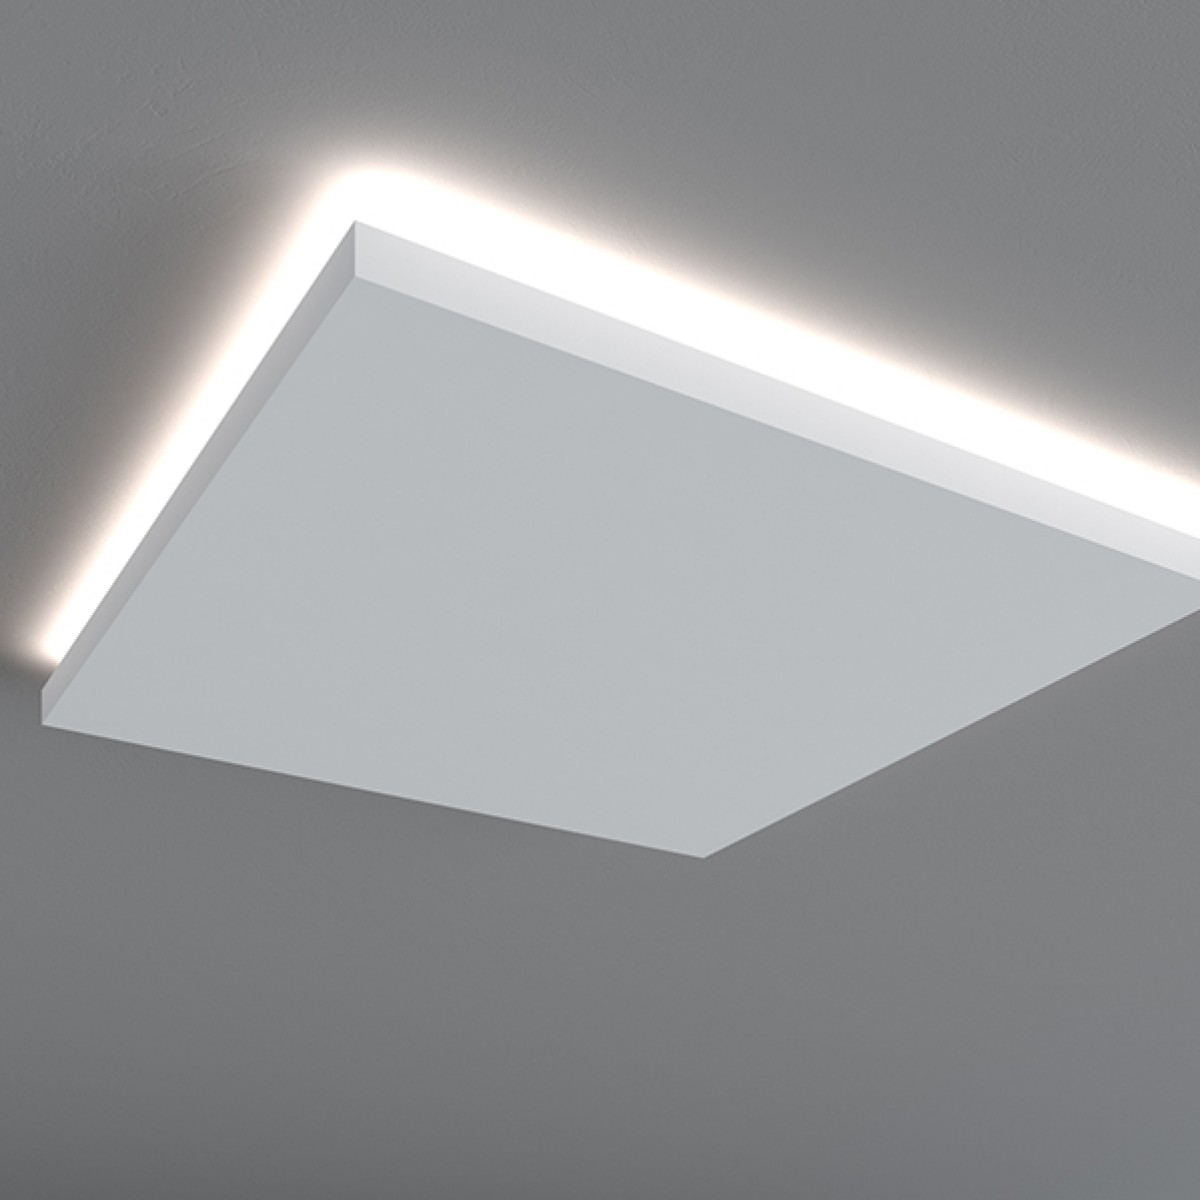 Rozeta decorativa pentru LED QR005, Dimensiuni: Diam. 60 cm (H: 5 cm), Mardom Decor, Rozete decorative 